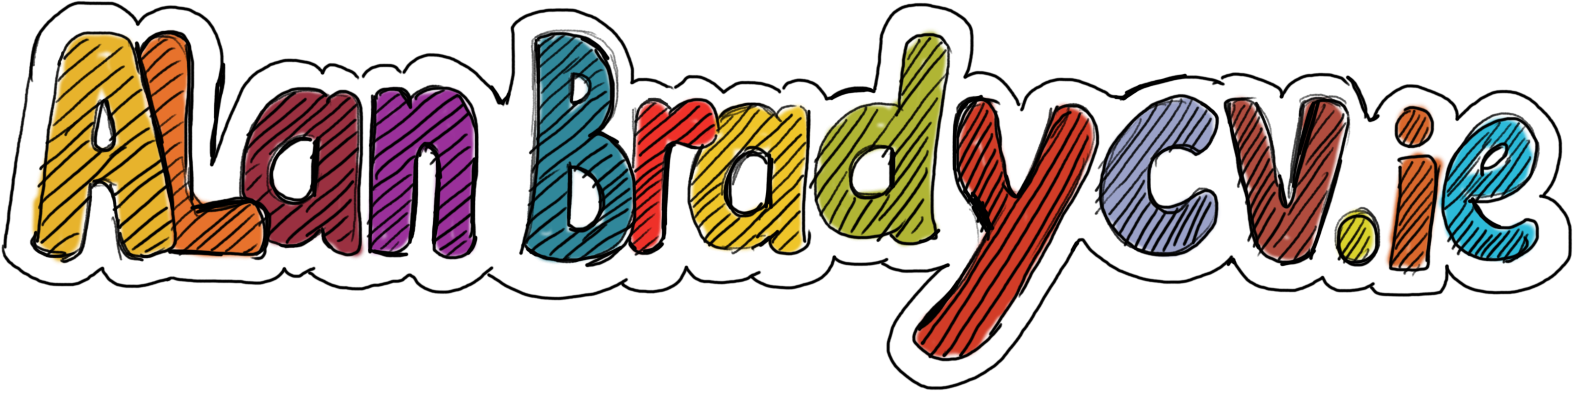 Alan Brady CV Logo